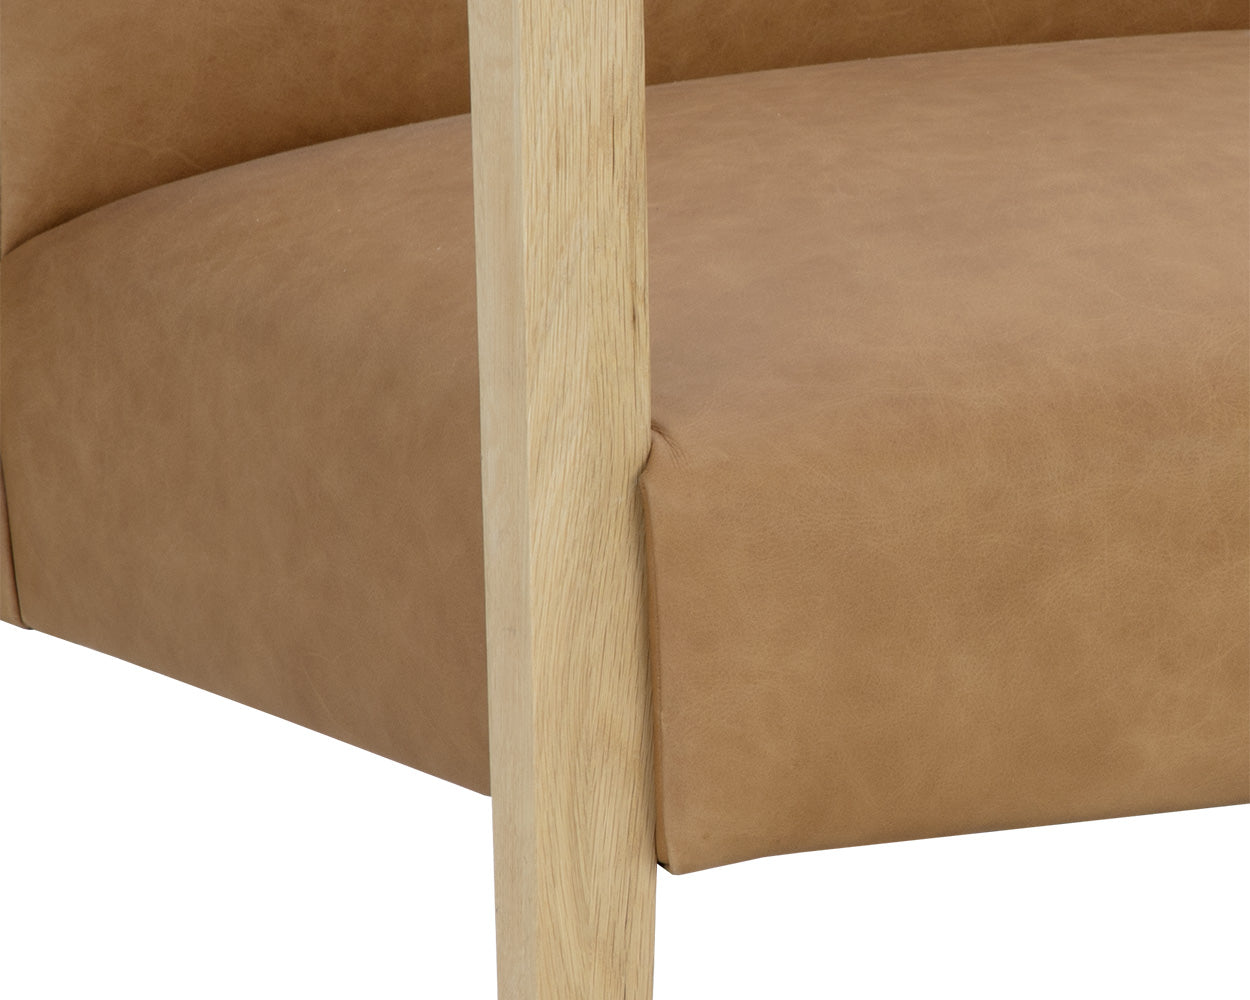 Earl Lounge Chair - Rustic Oak